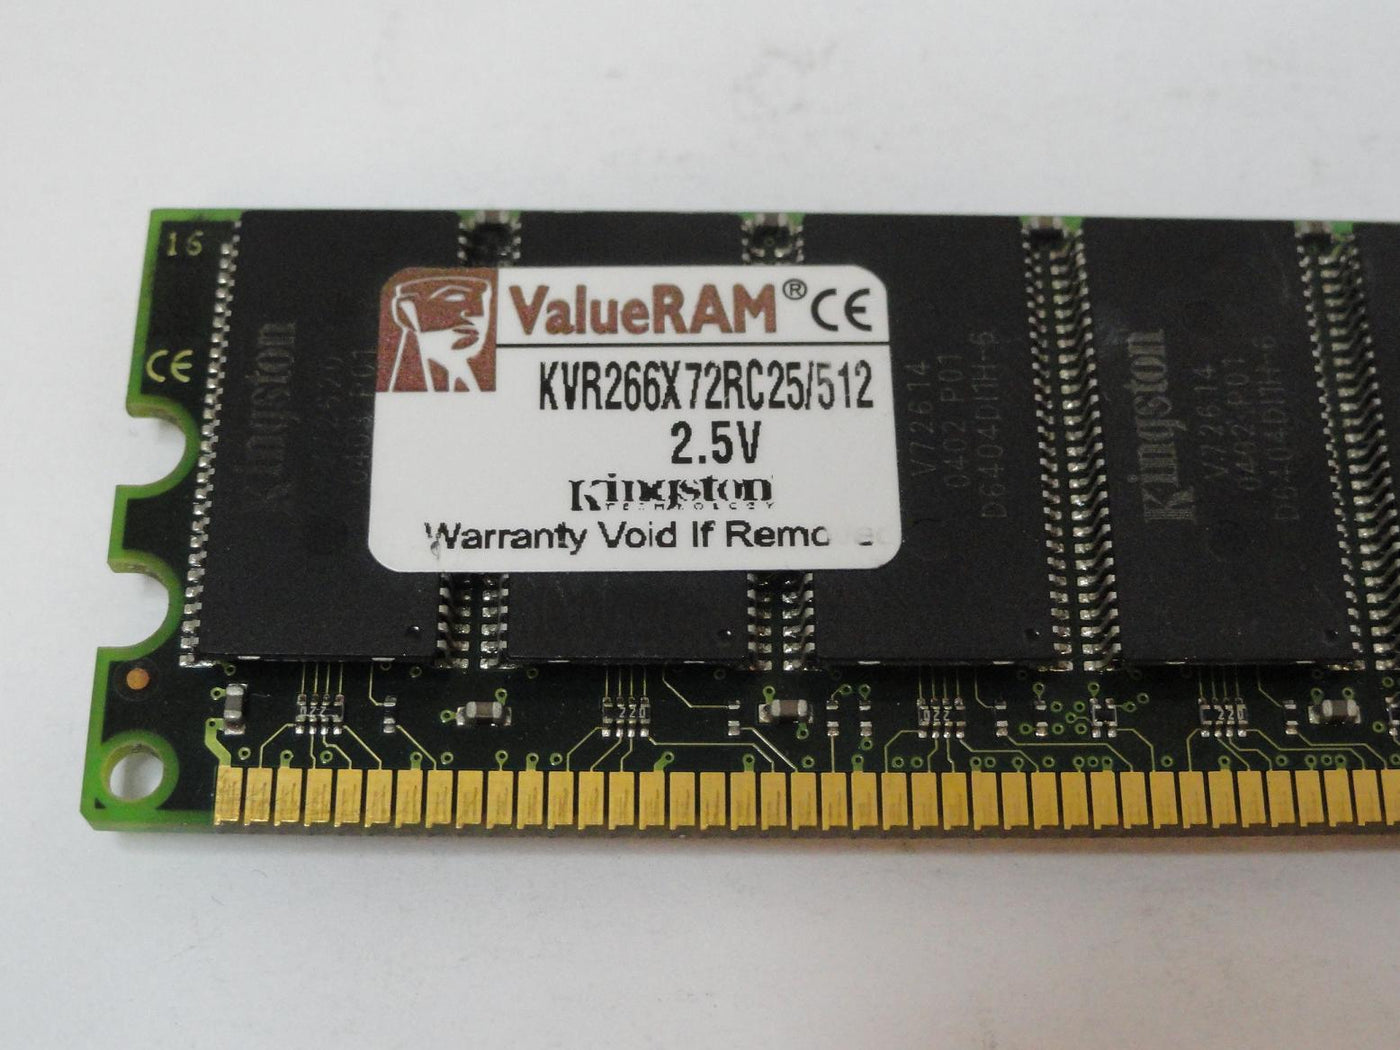 PR25397_9965249-002.A00_Kingston 512MB PC2100 DDR-266MHz DIMM RAM - Image4